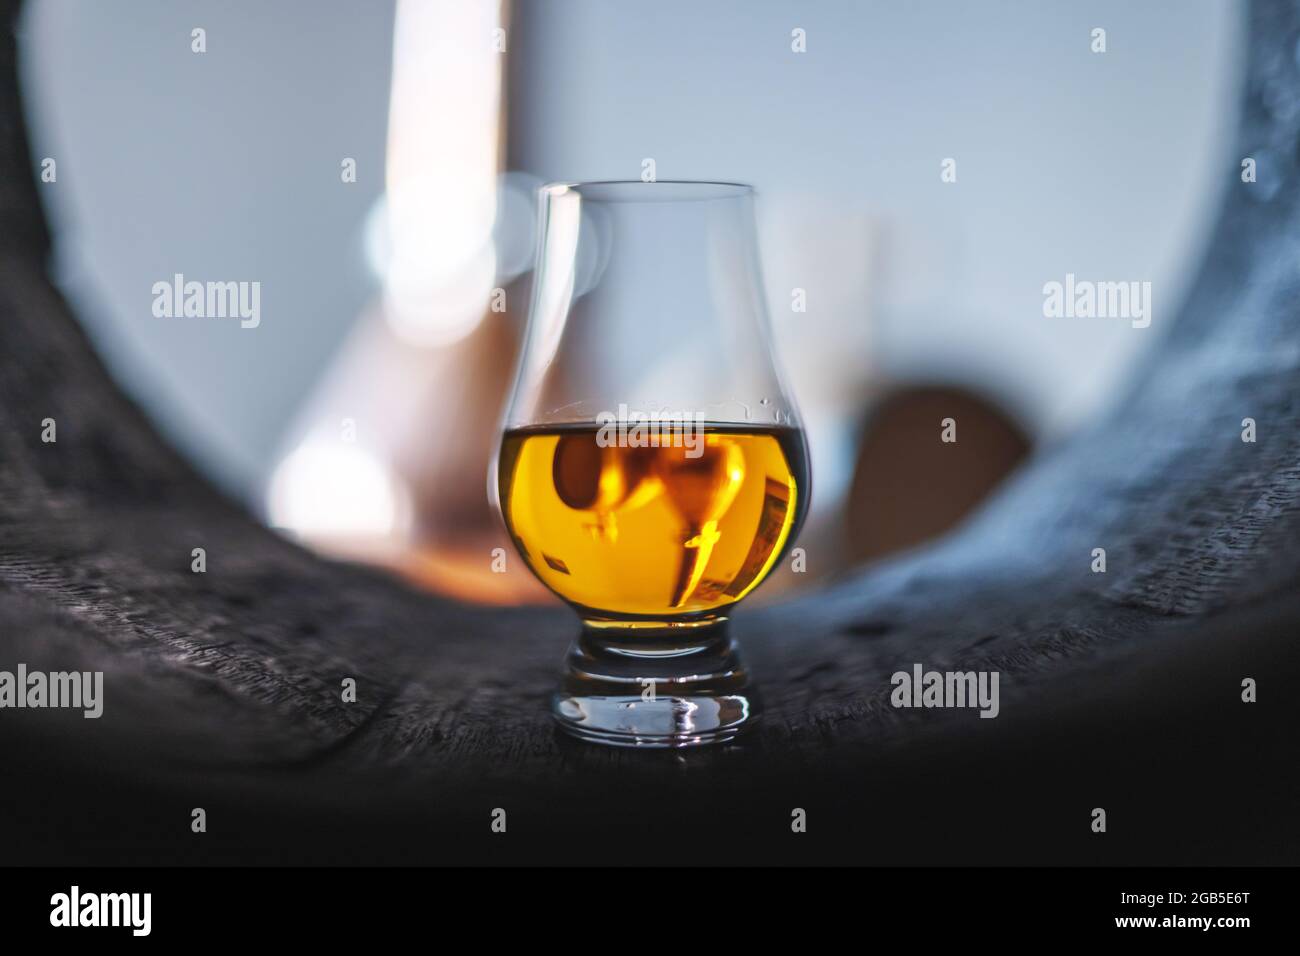 Un verre de whisky dans le vieux tonneau de chêne. Cuivre alambique en arrière-plan. Concept de distillerie d'alcool traditionnelle Banque D'Images